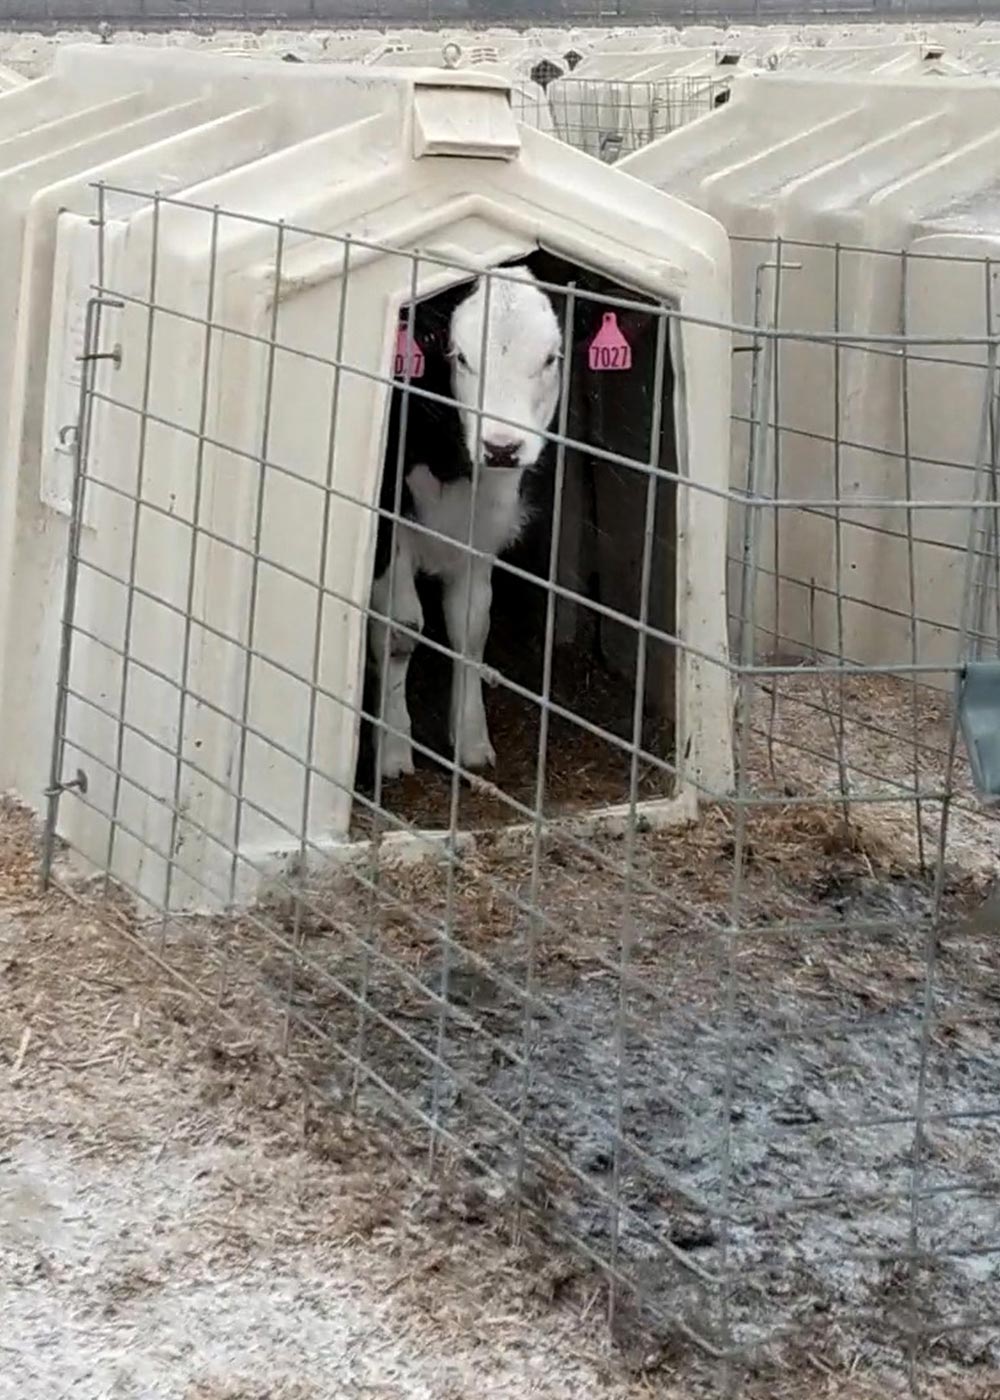 Calf in a hutch